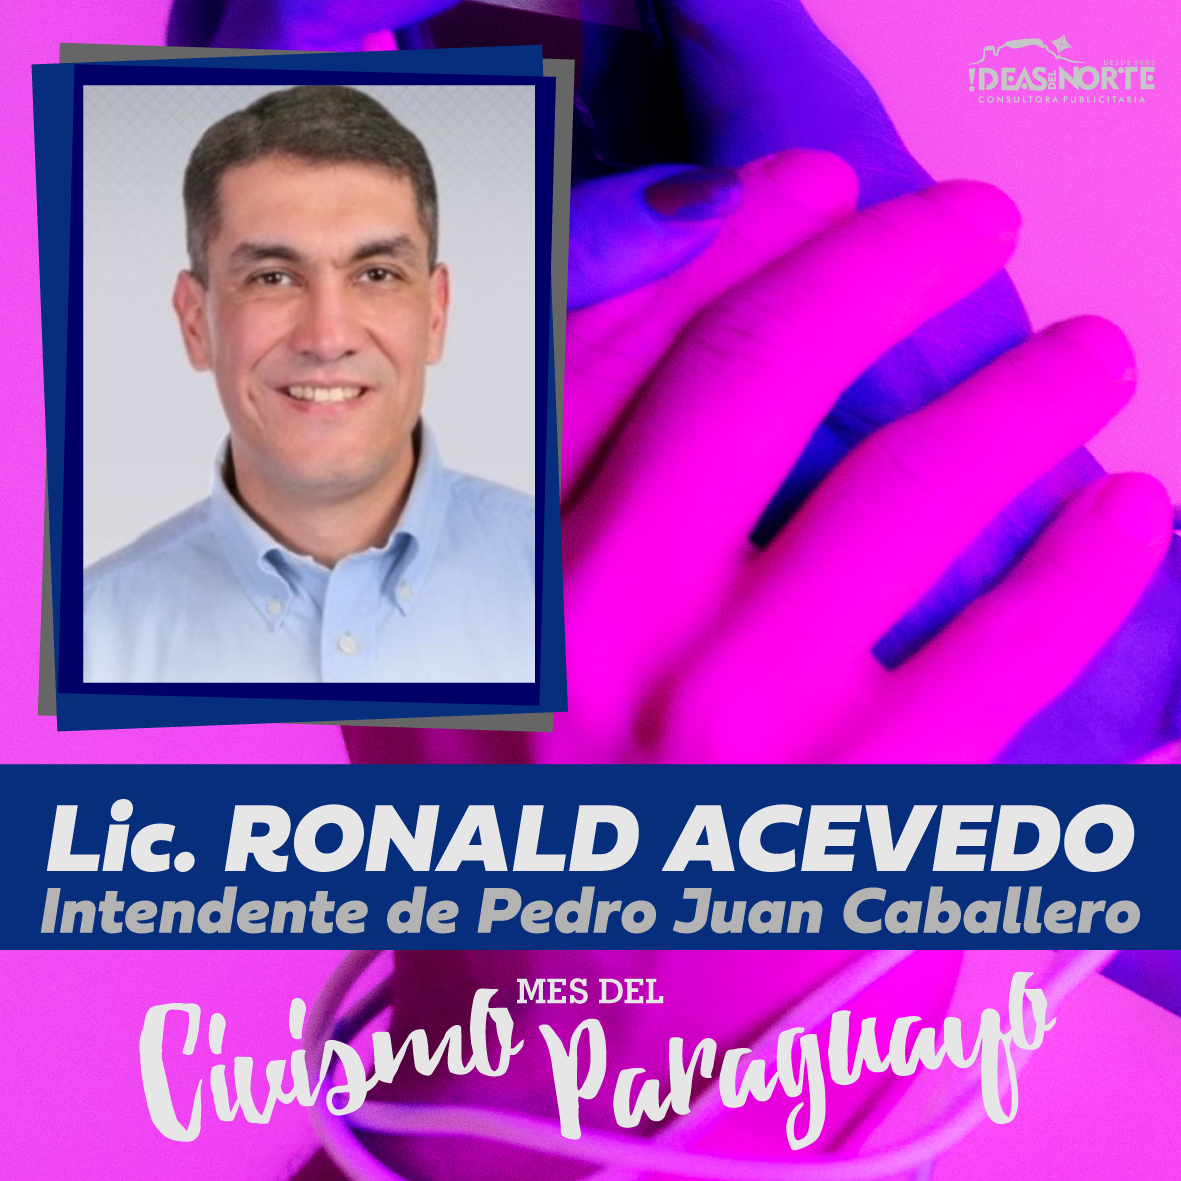 Ronald Acevedo